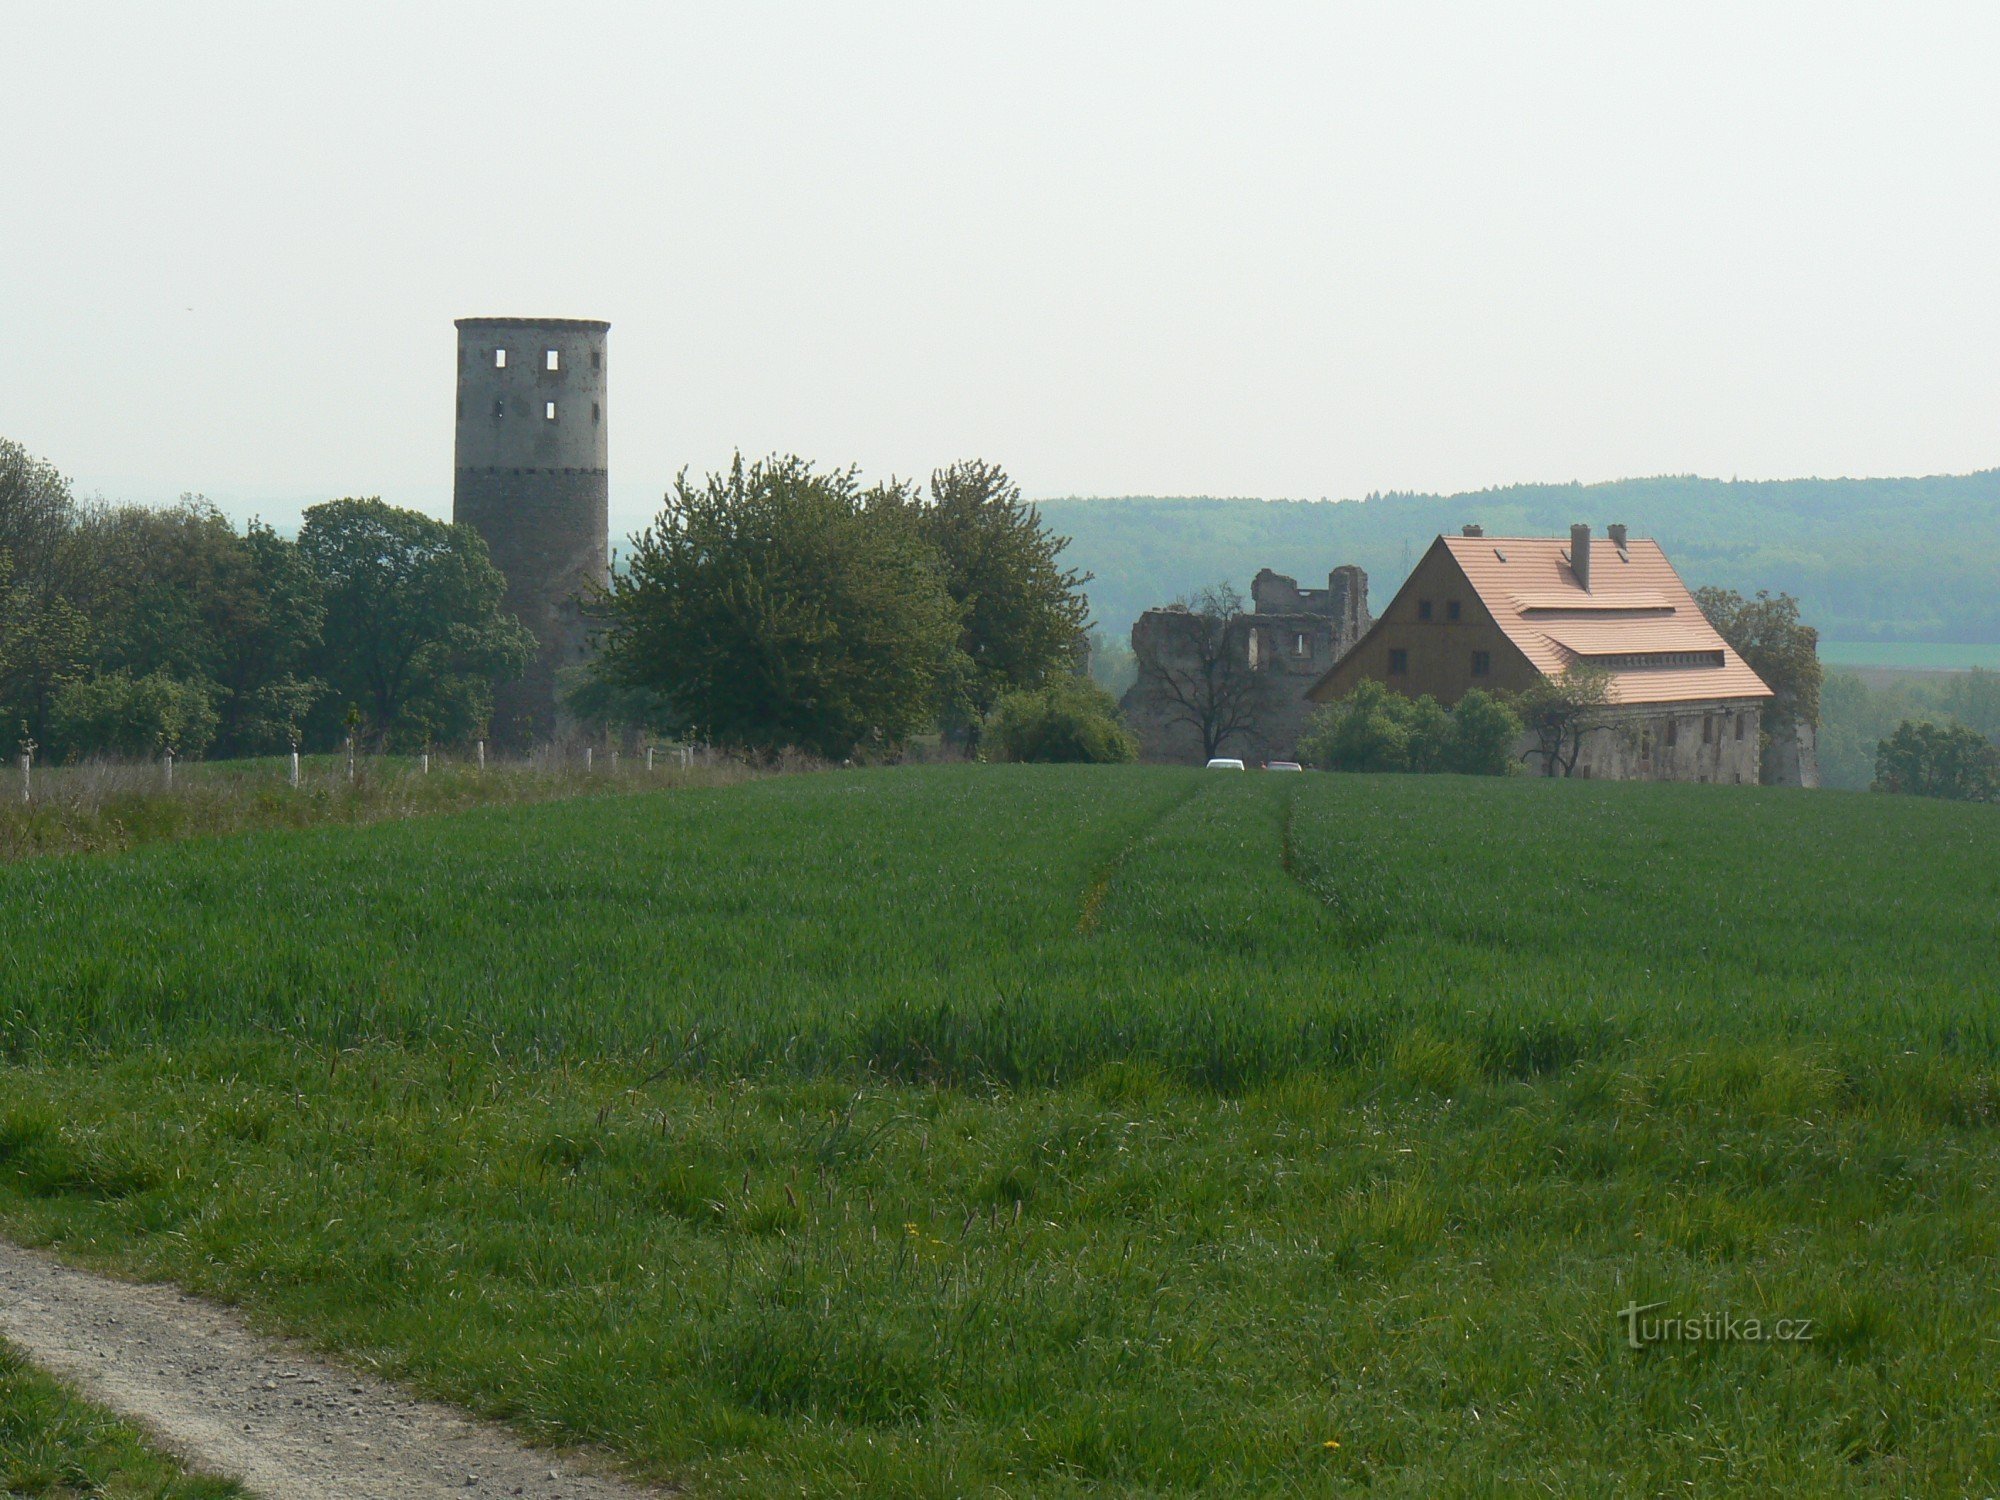 Zviřetice-toren en andere gebouwen